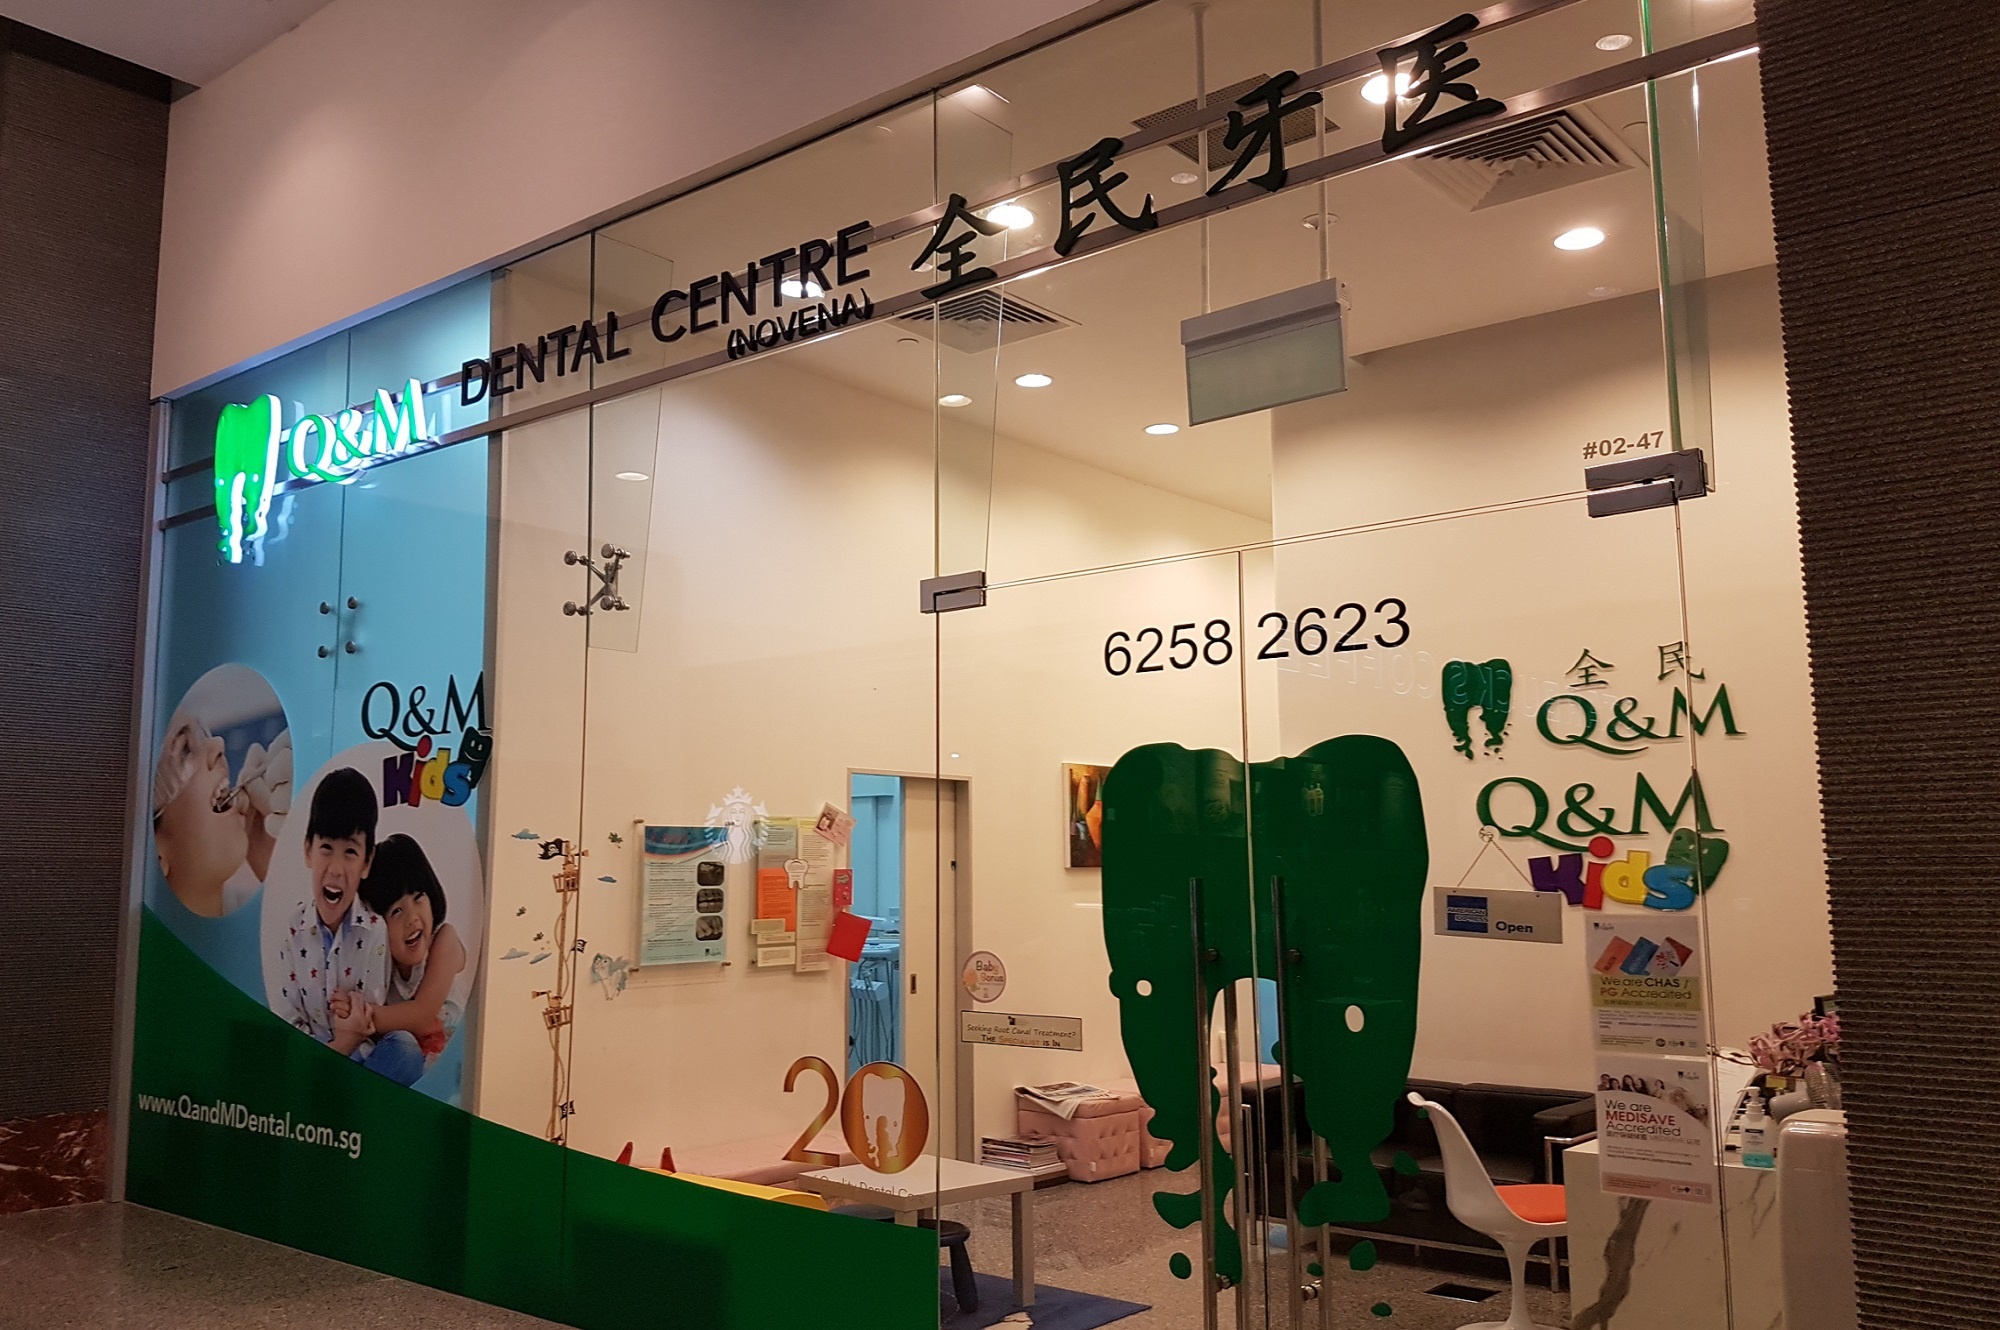 Q&M Dental Centre at Velocity @ Novena Square